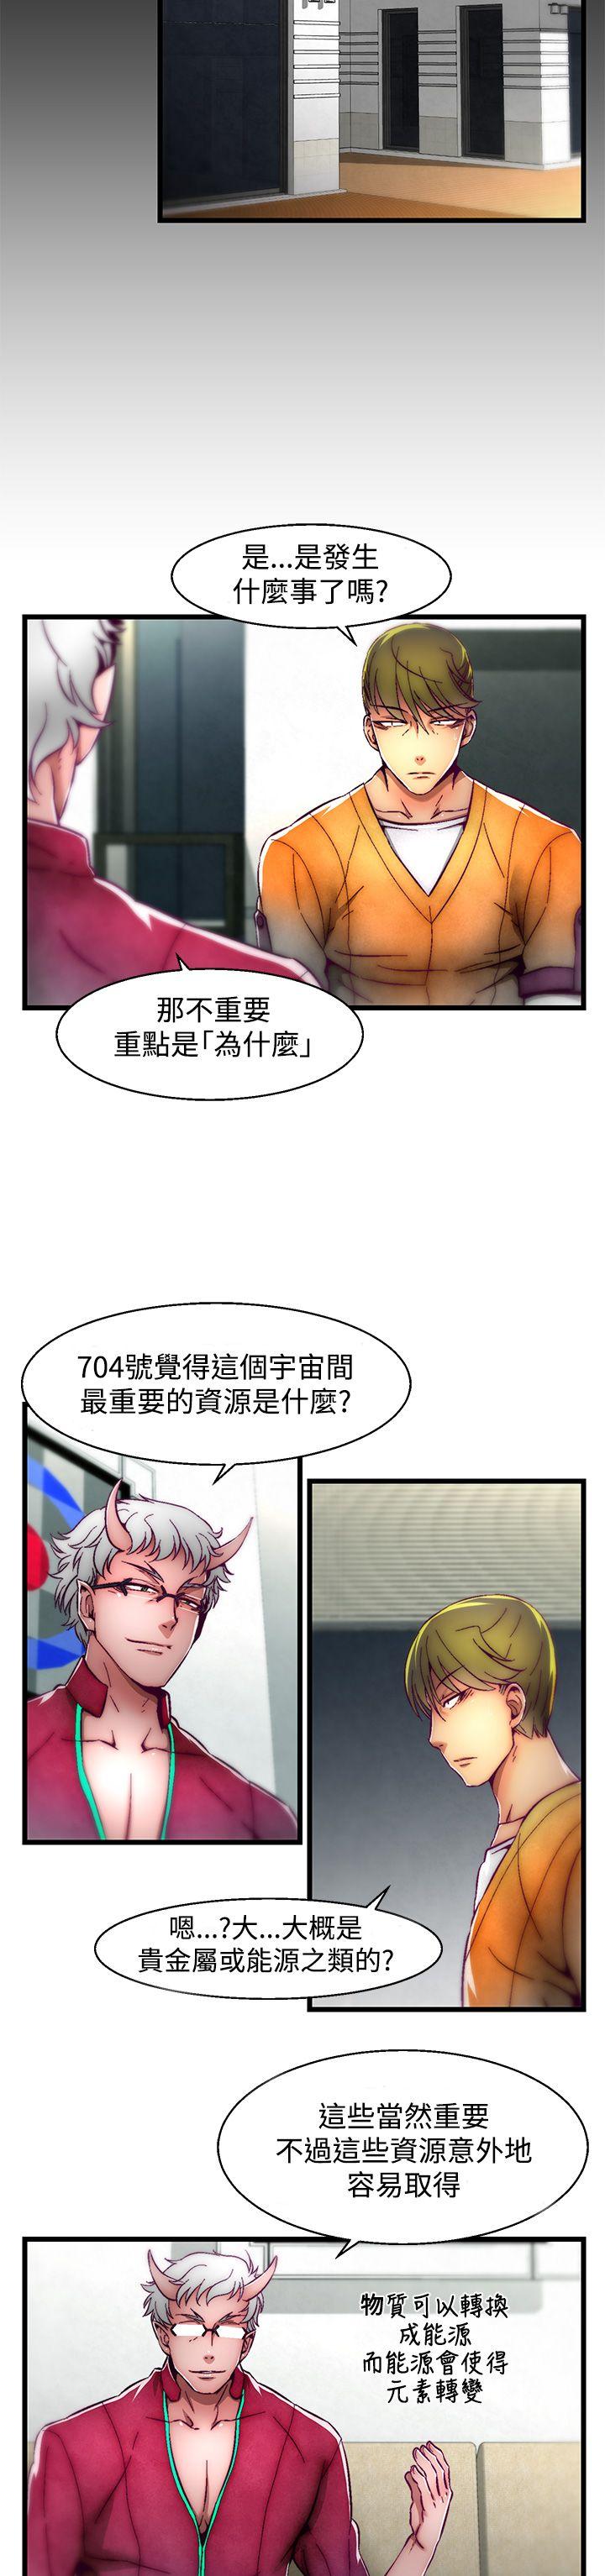 韩国污漫画 啪啪啪調教所 第2话(第2季) 2